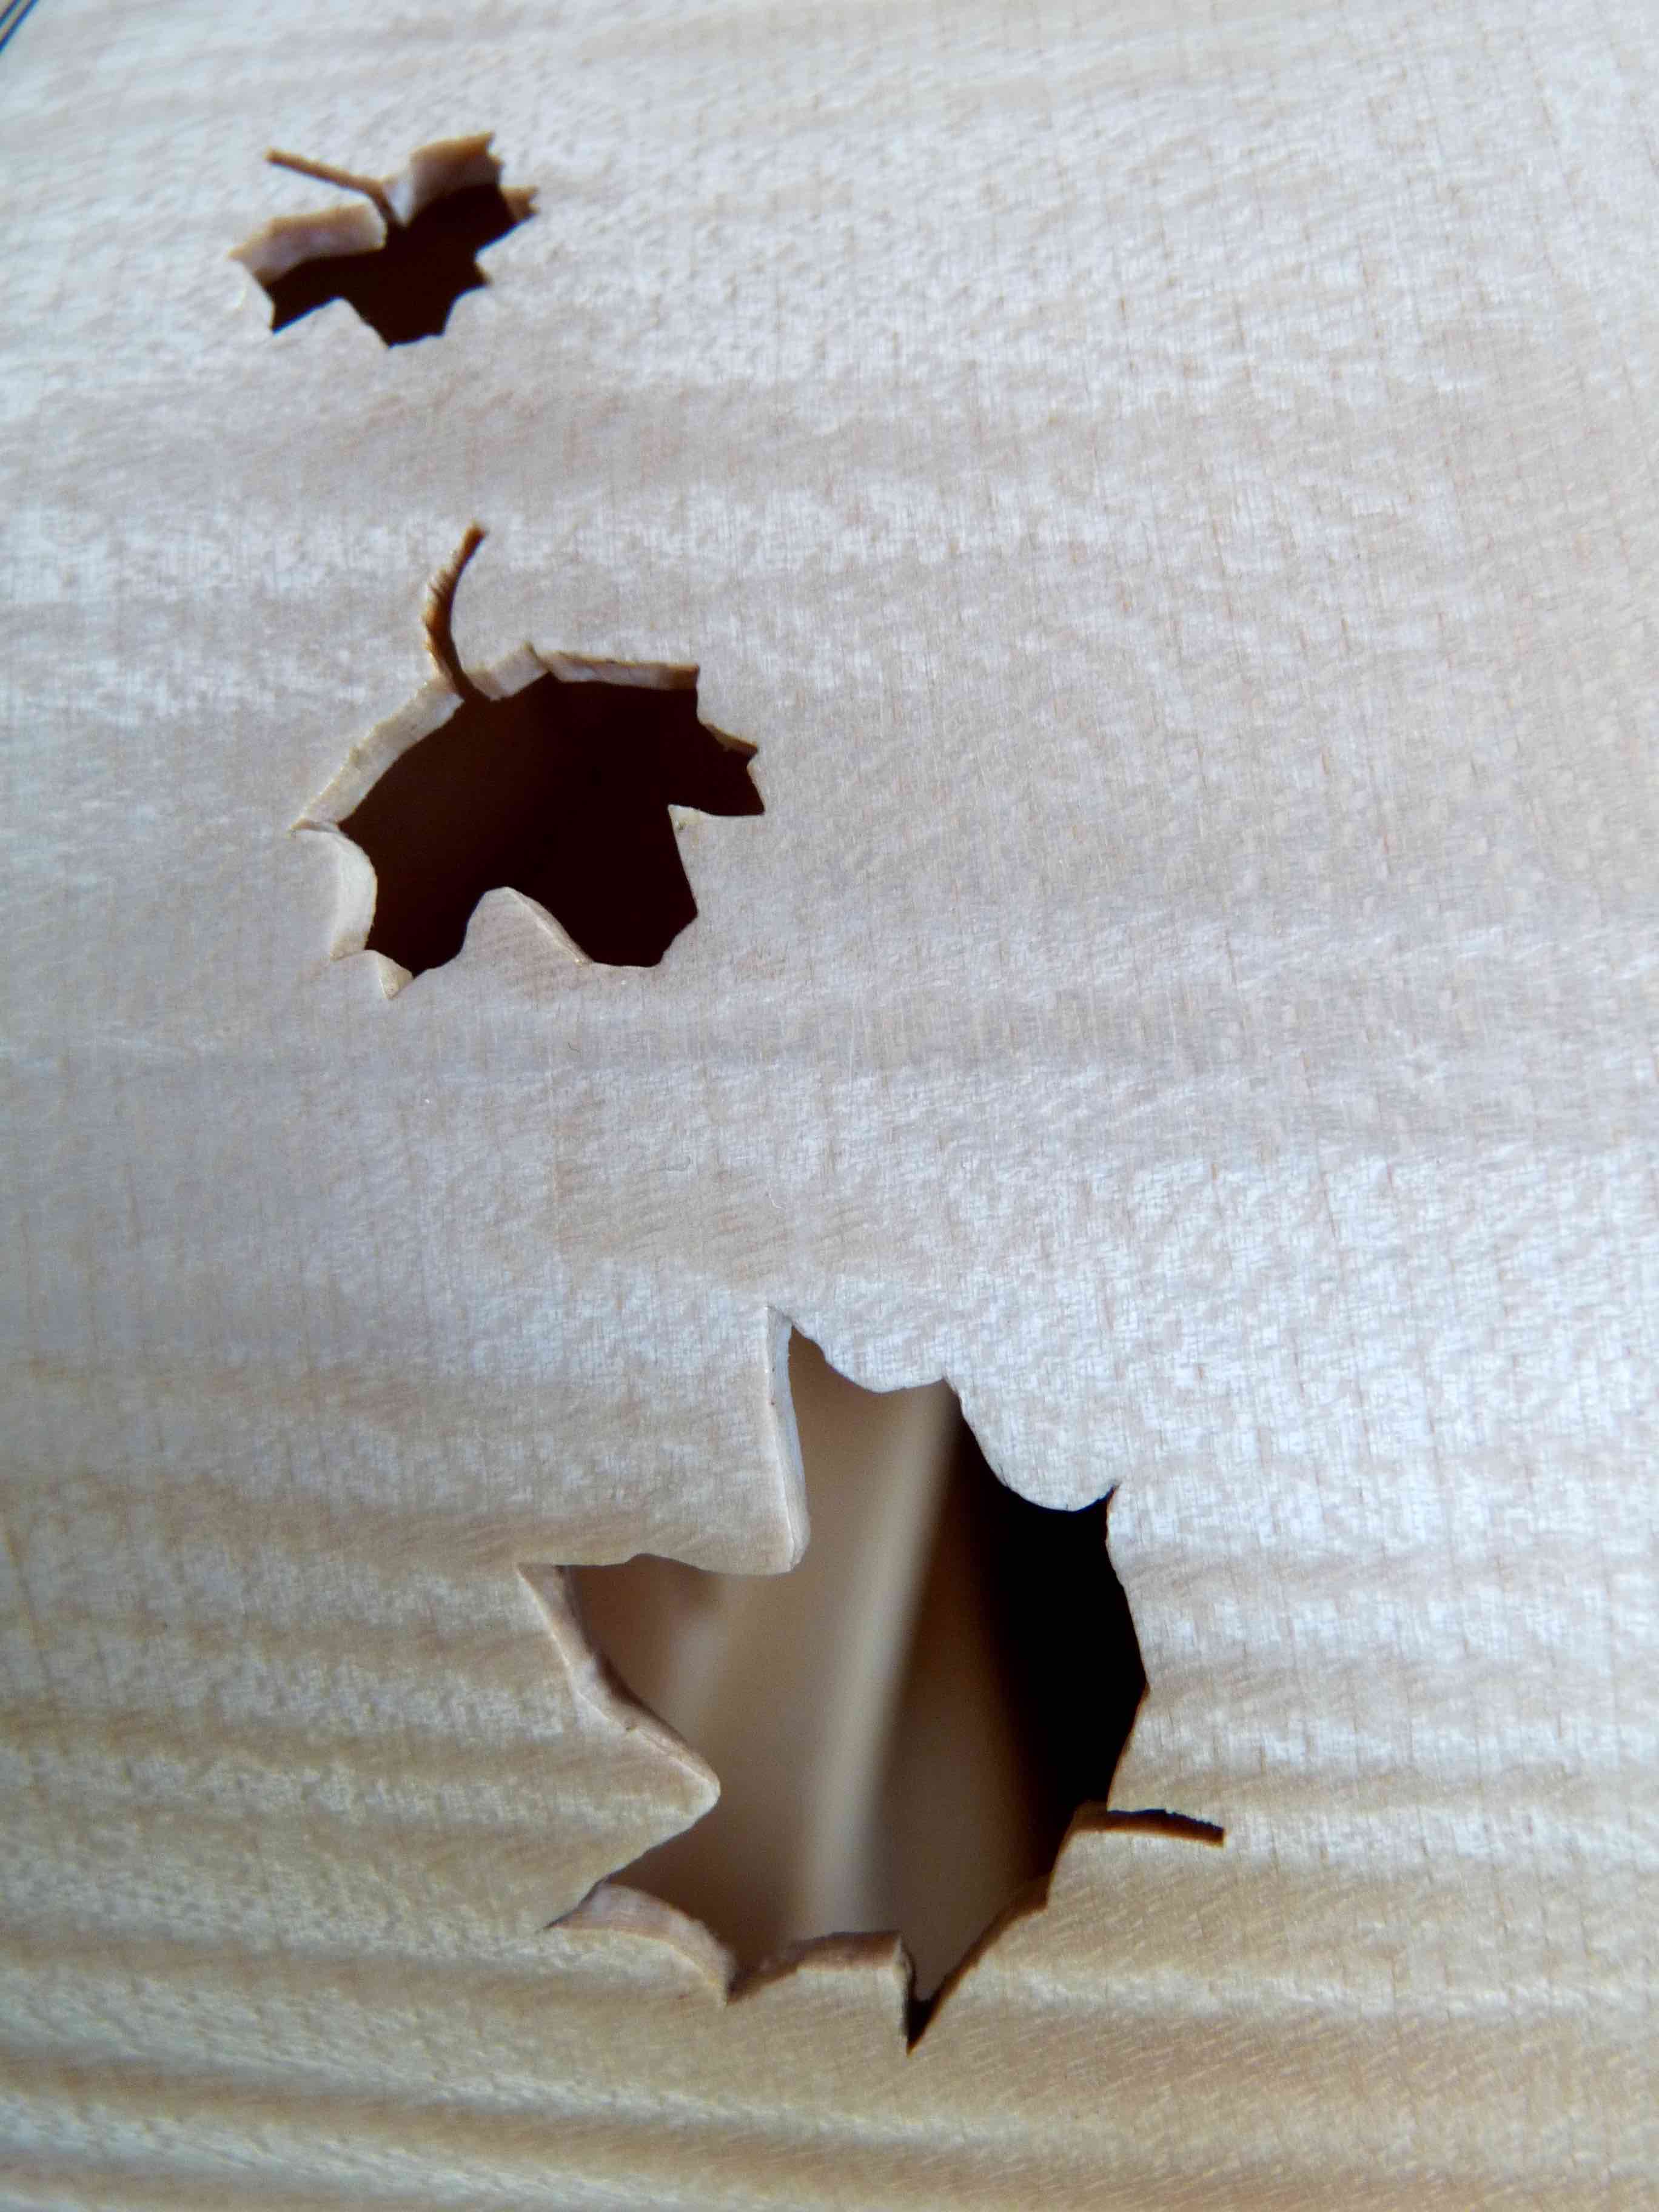 Détails de feuilles d'érable sur l'éclisse d'une guitare.